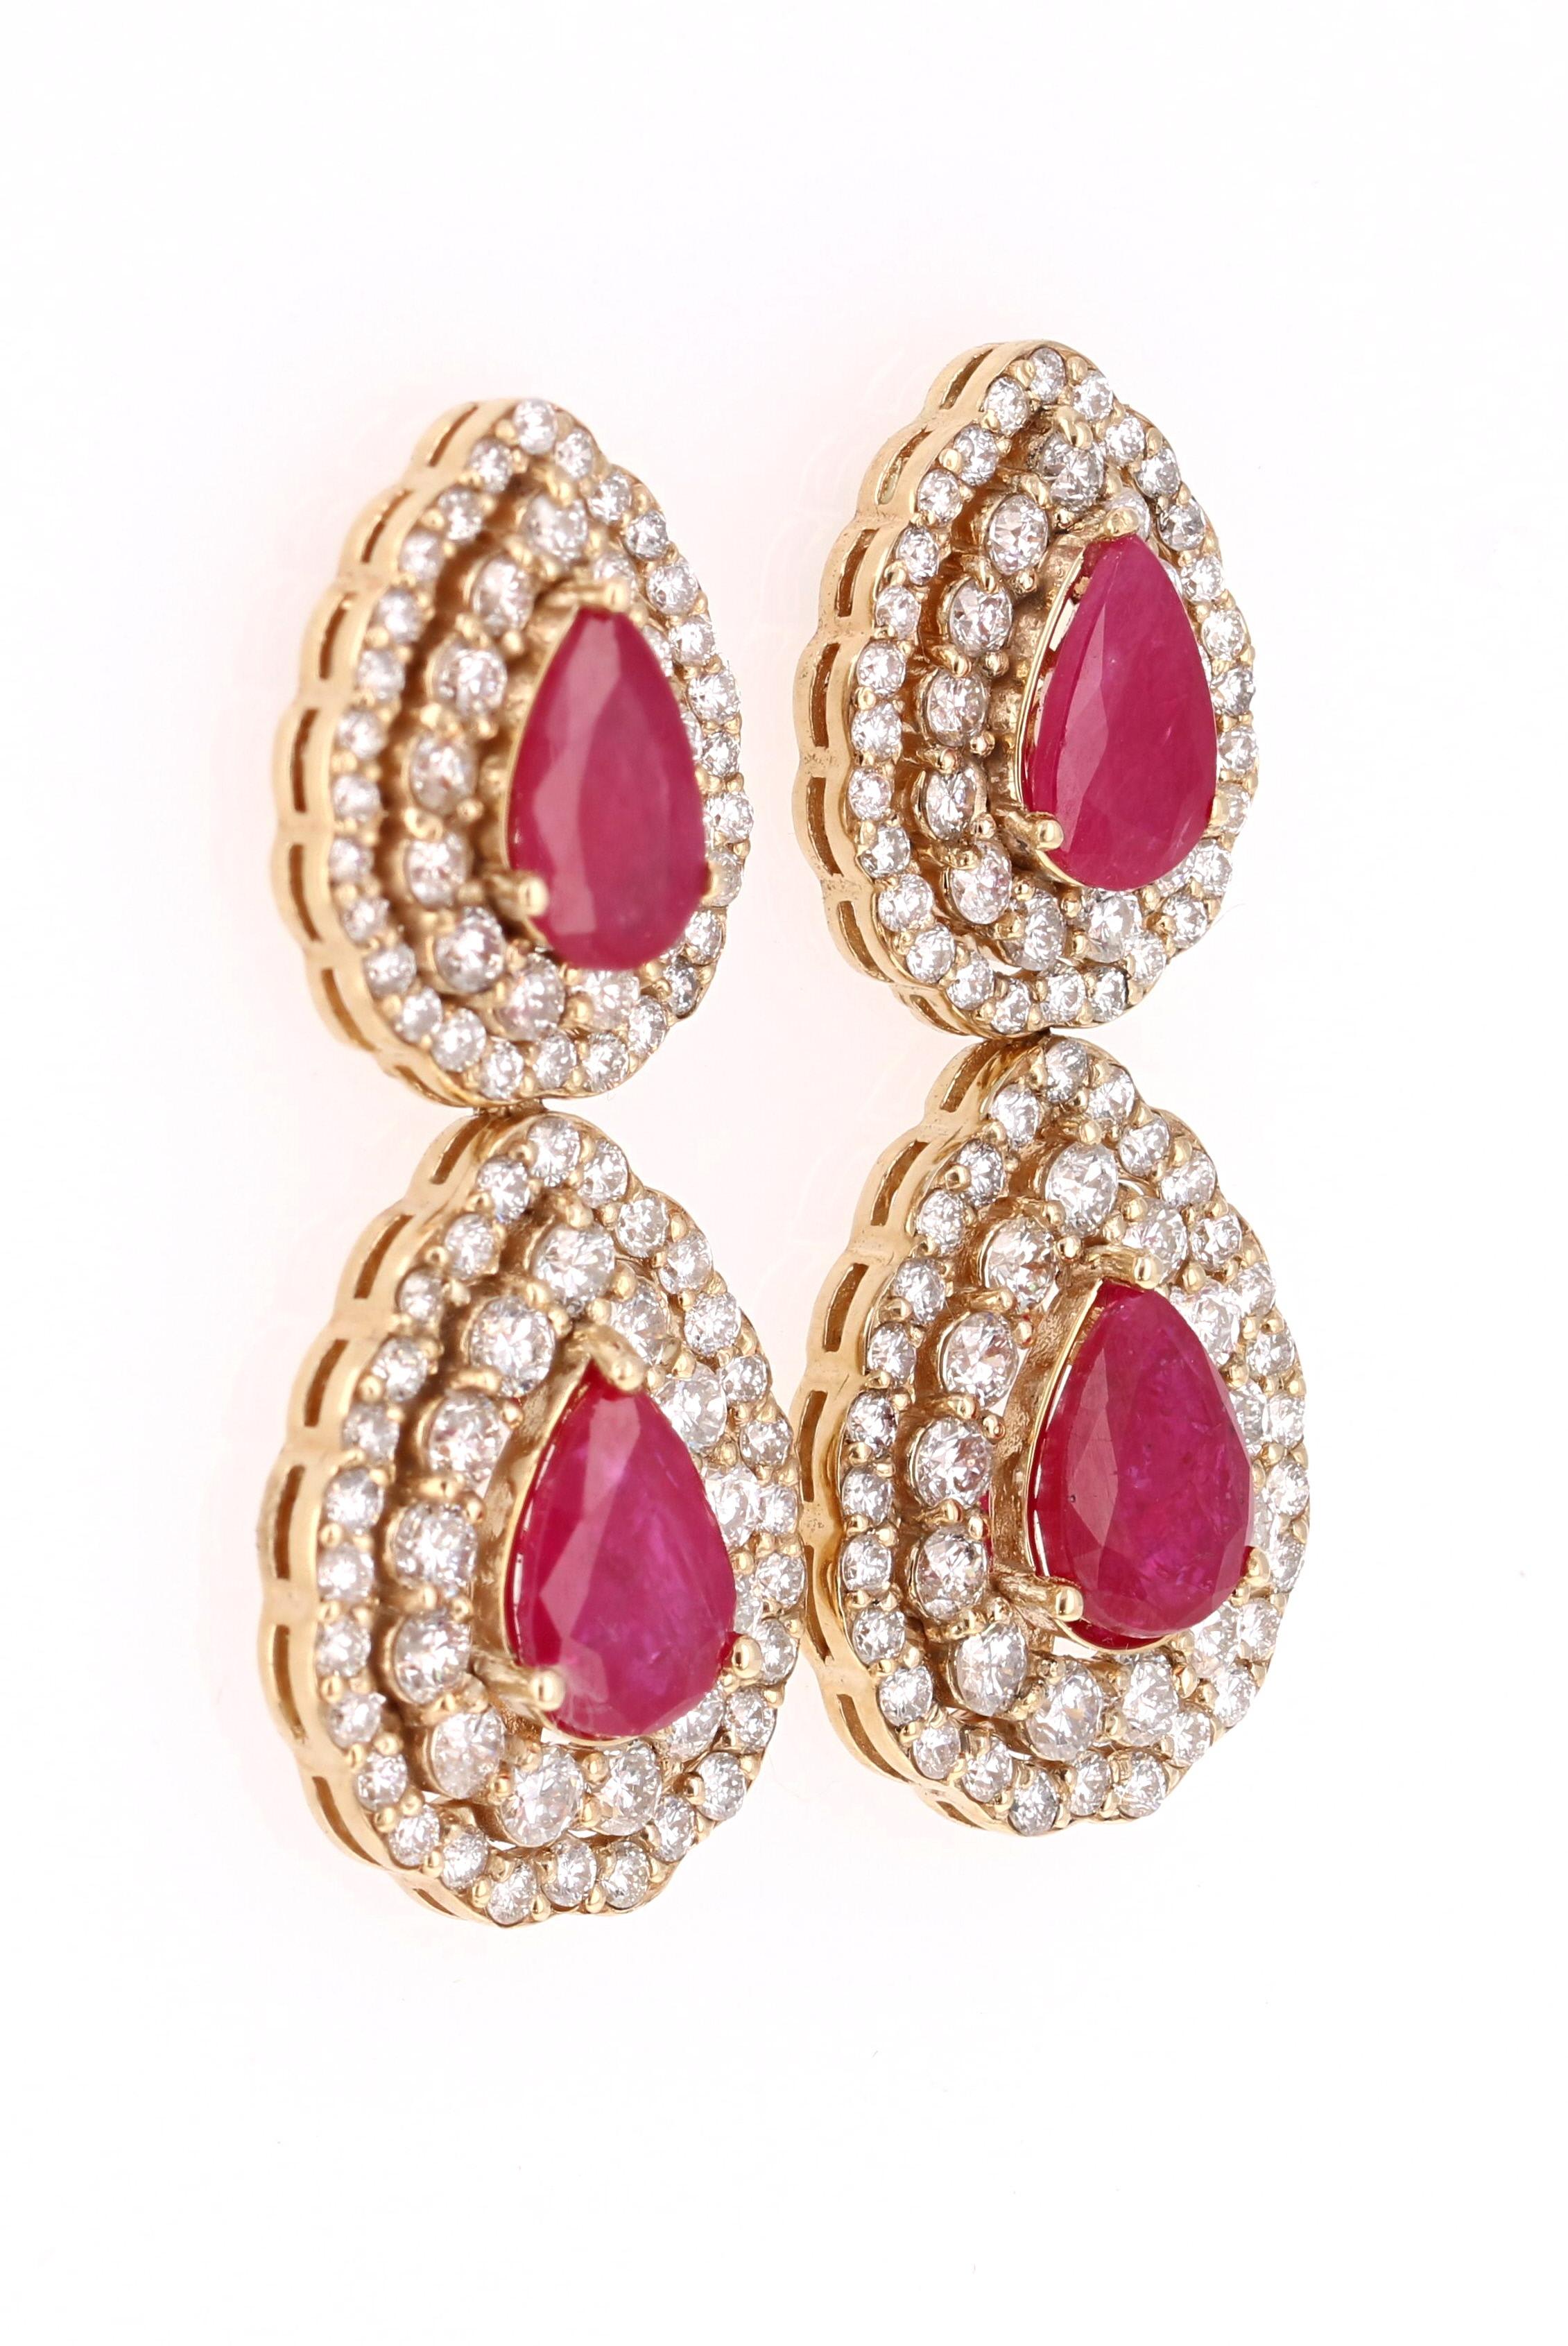 Diese Ohrringe haben 4 natürliche Rubine im Birnenschliff mit einem Gewicht von 4,59 Karat. Sie sind umgeben von 164 Diamanten im Rundschliff mit einem Gewicht von 3,18 Karat. (Reinheit: SI, Farbe: F)

Die Rubine sind natürlich und wurden gemäß den